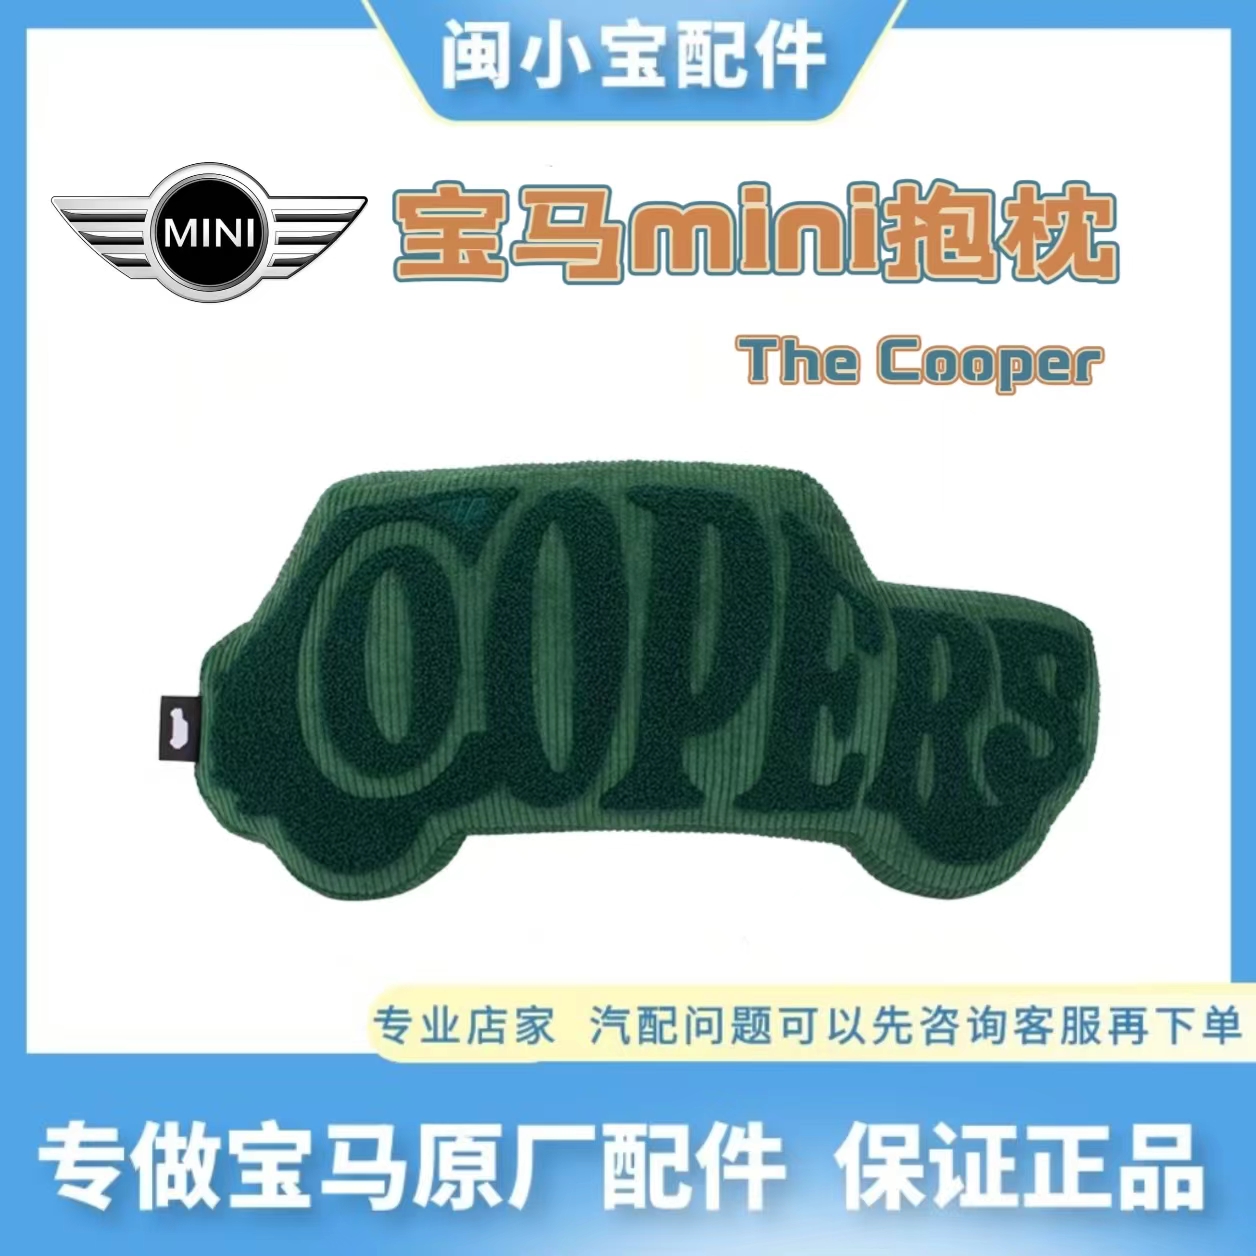 宝马原厂抱枕MINI The Coopers车用靠腰头枕新品可爱卡通车型靠枕